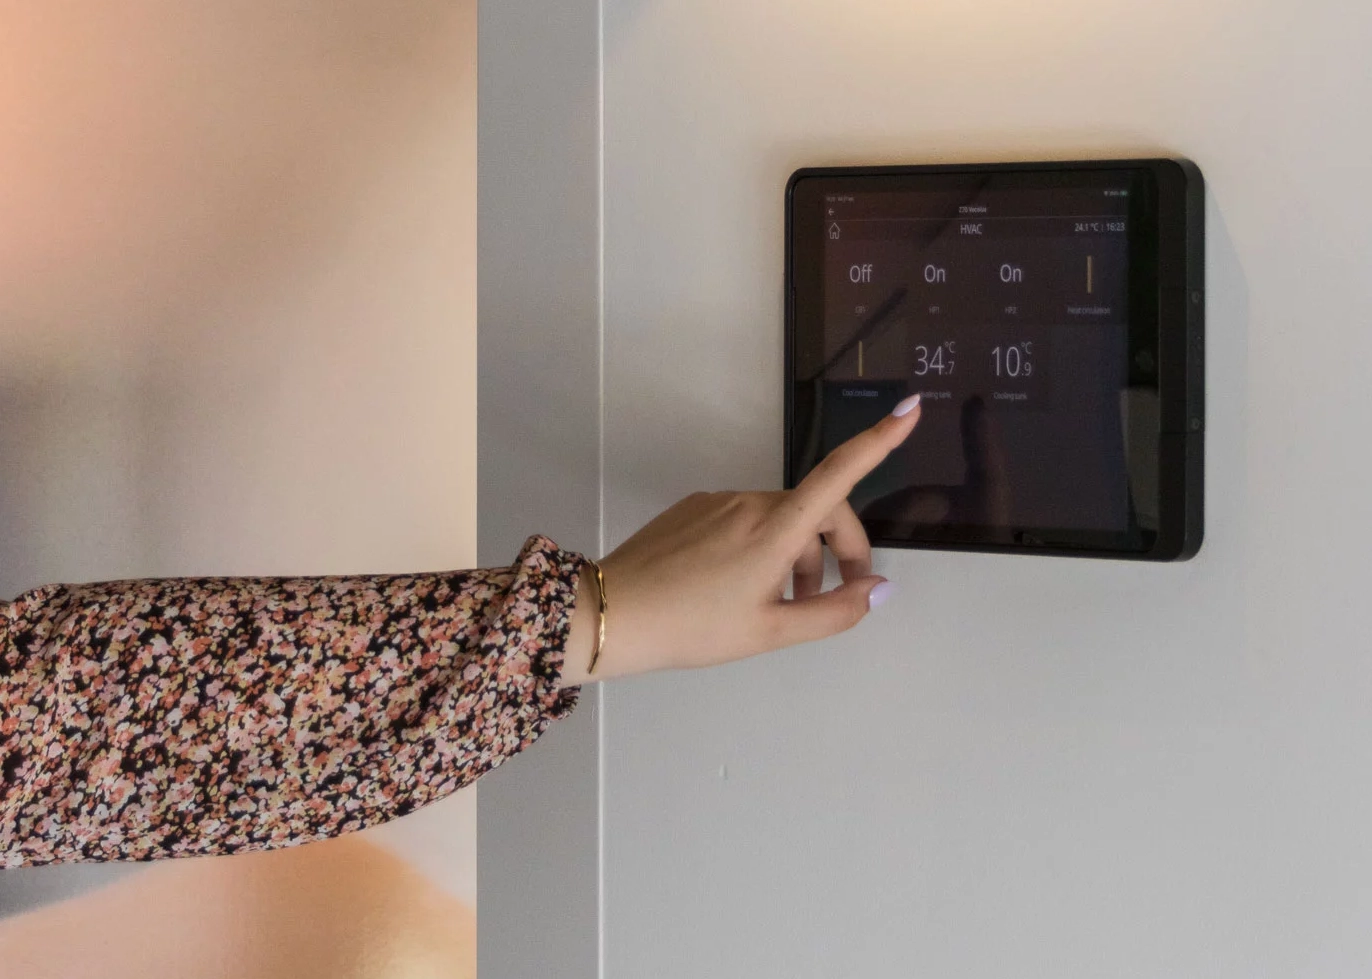 Domotica, vrouwenhand bediend temperatuur via touchscreen aan de muur